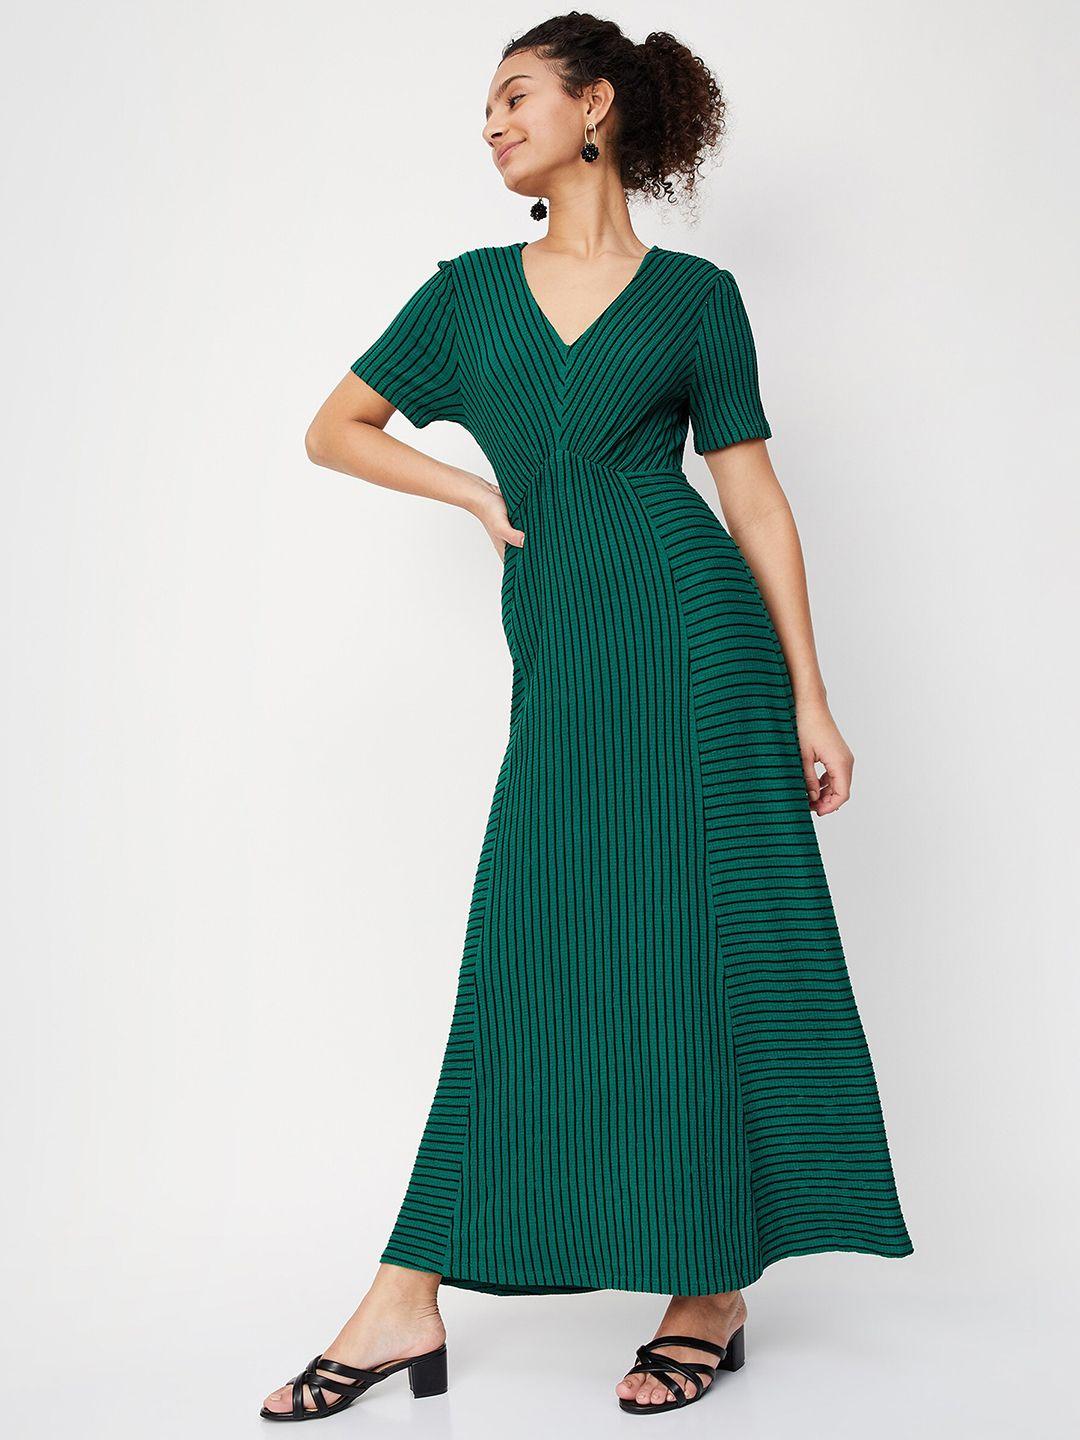 max women green striped maxi dress